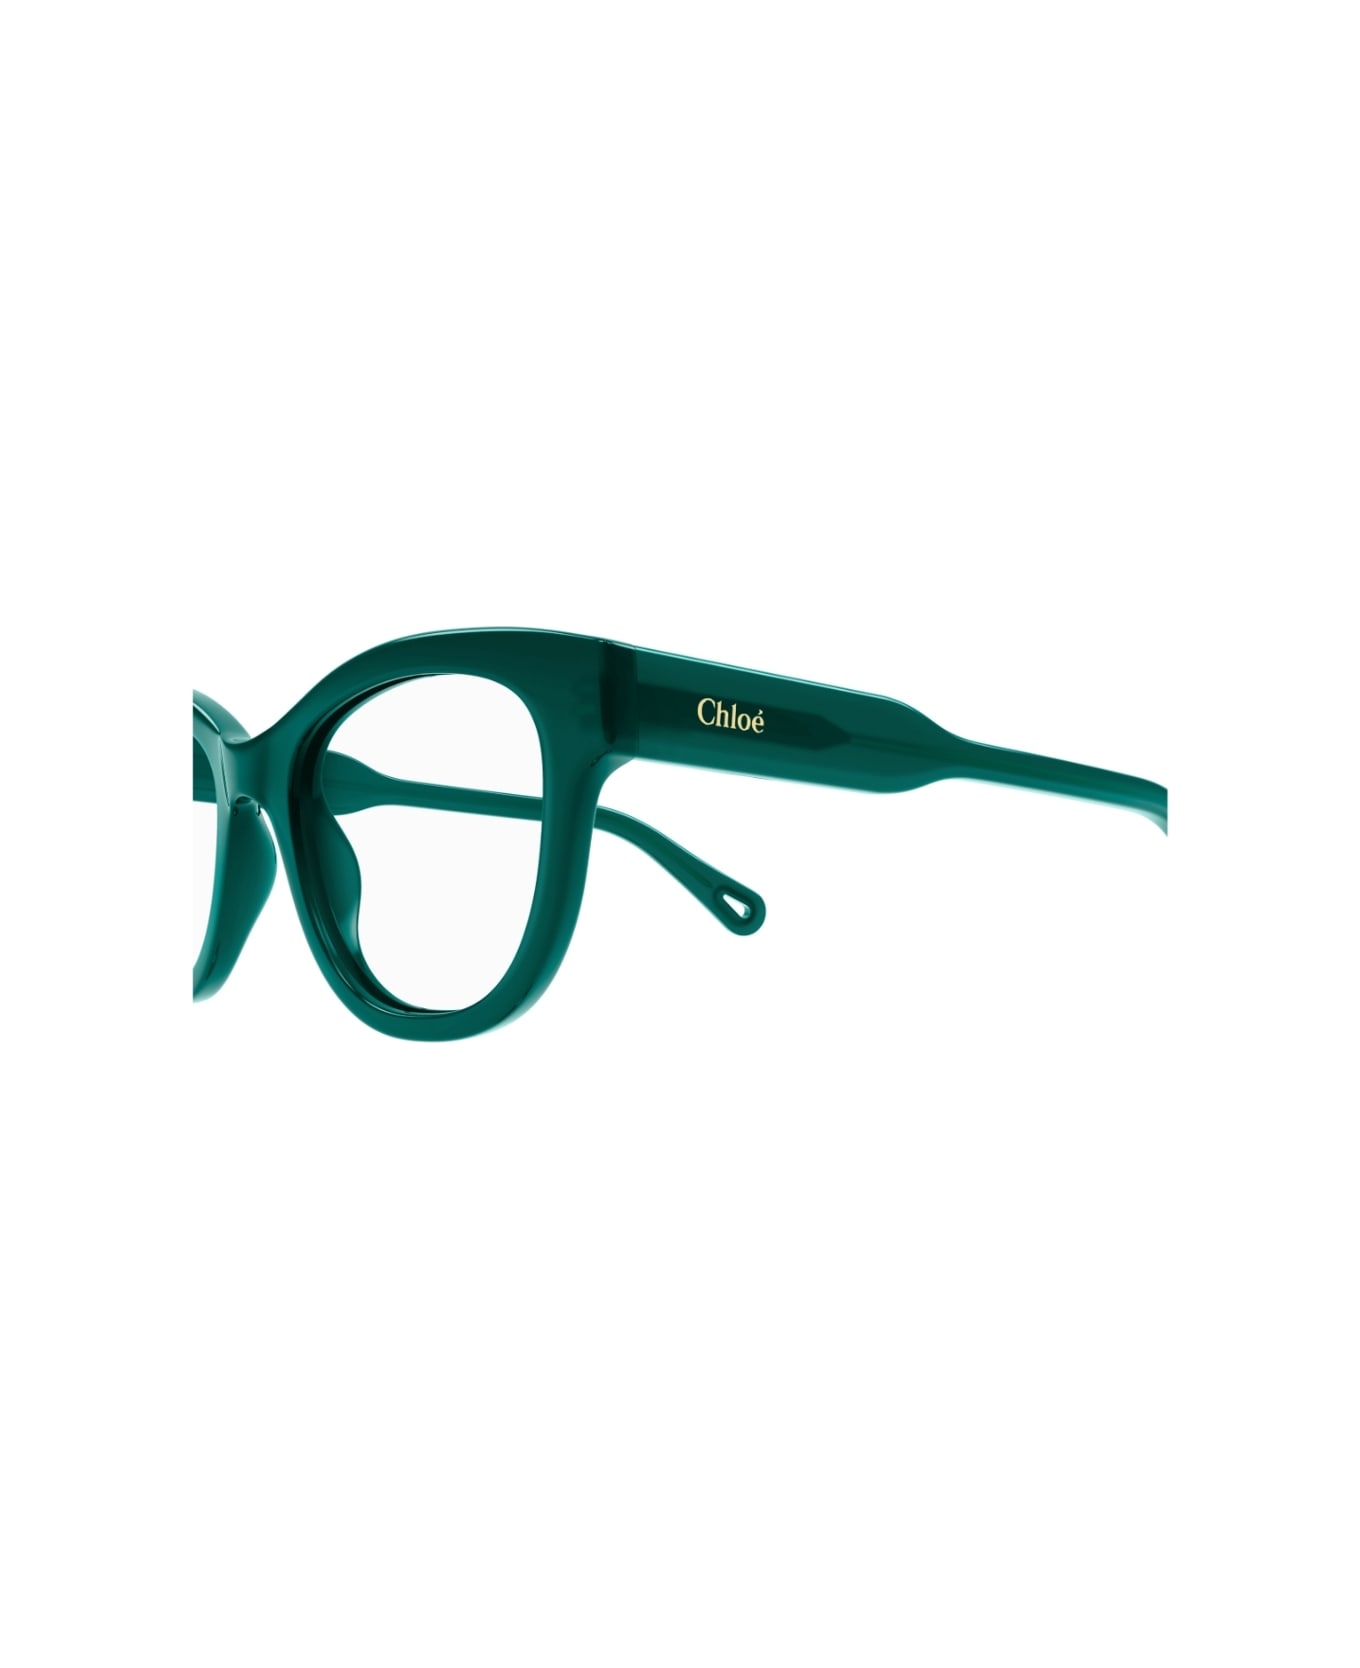 Chloé Eyewear CH0162o 008 Glasses